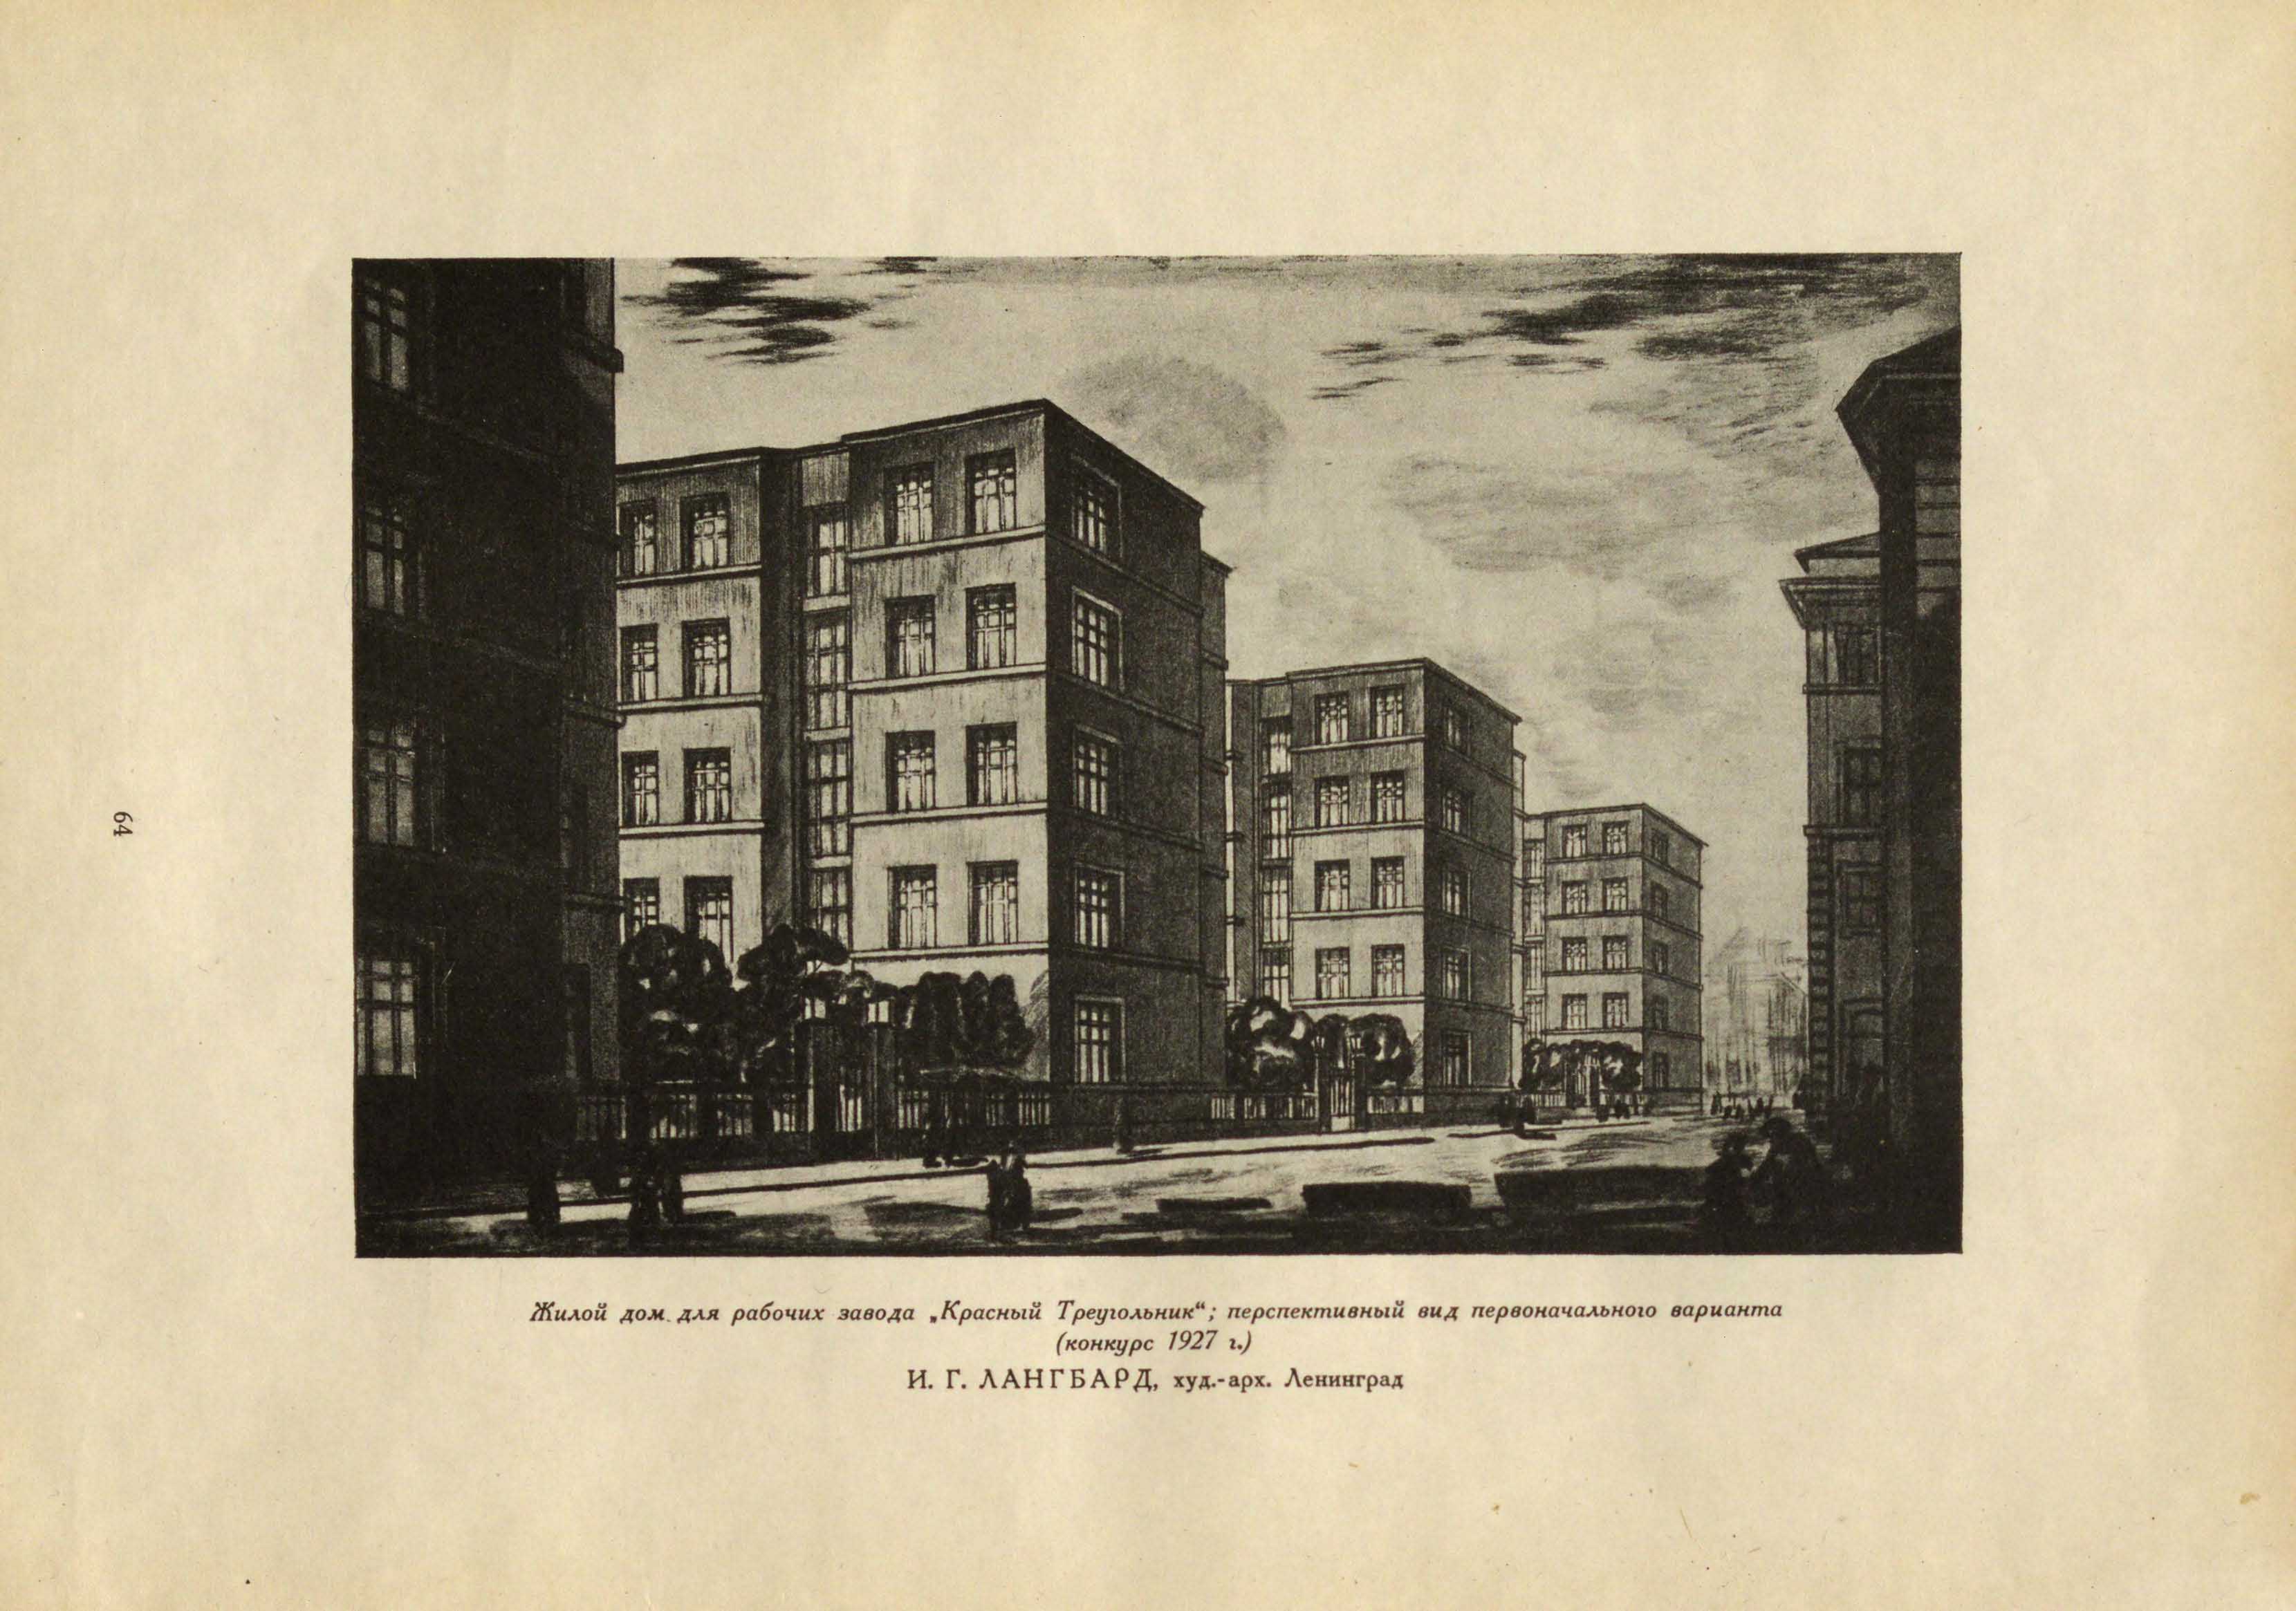 Лангбард И. Г. Проект дома для рабочих завода „Красный Треугольник“ (первоначальный вариант, конкурс 1927)